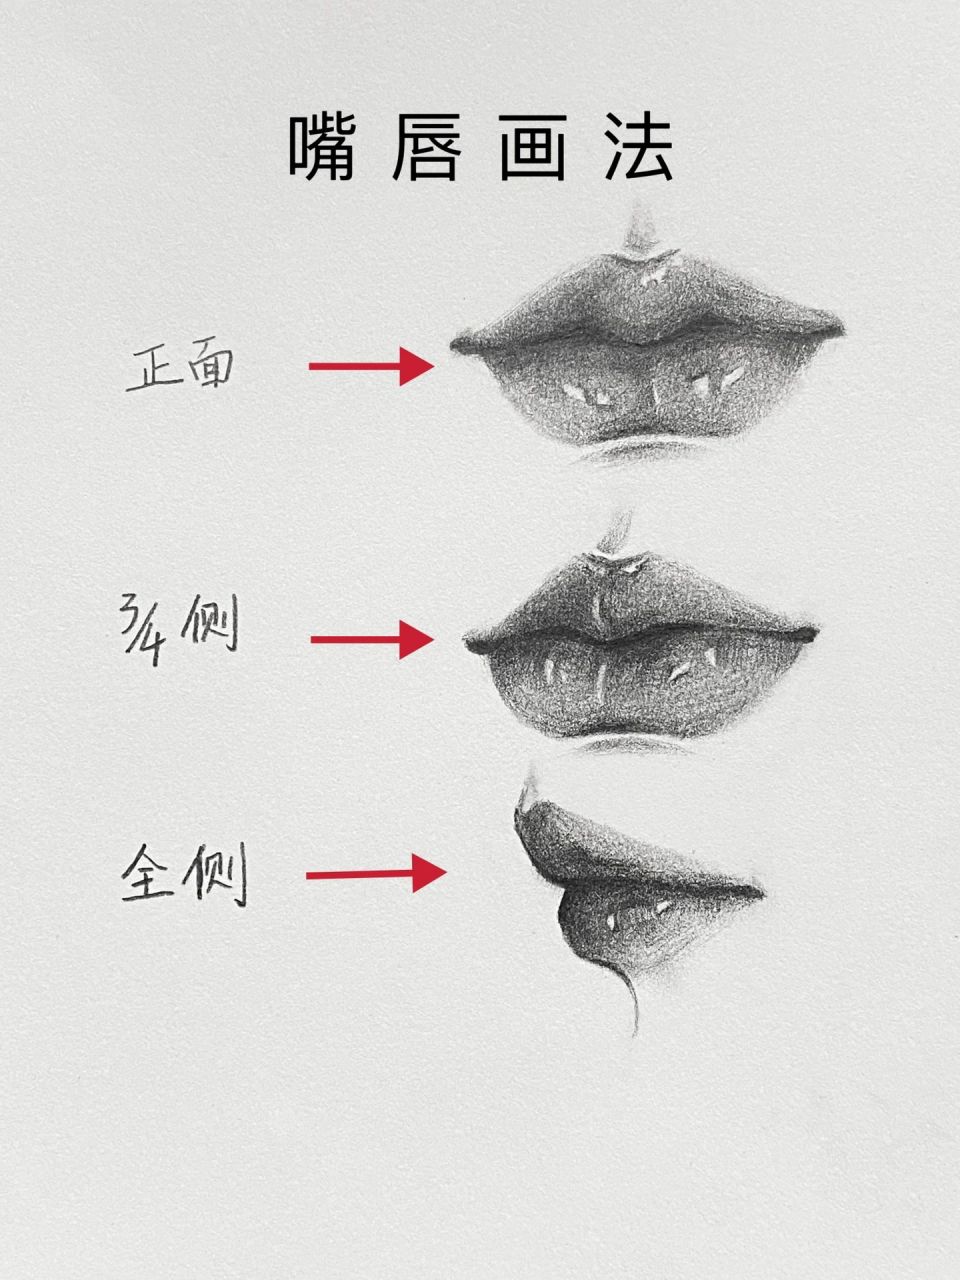 关于唇的讲解和画法图片